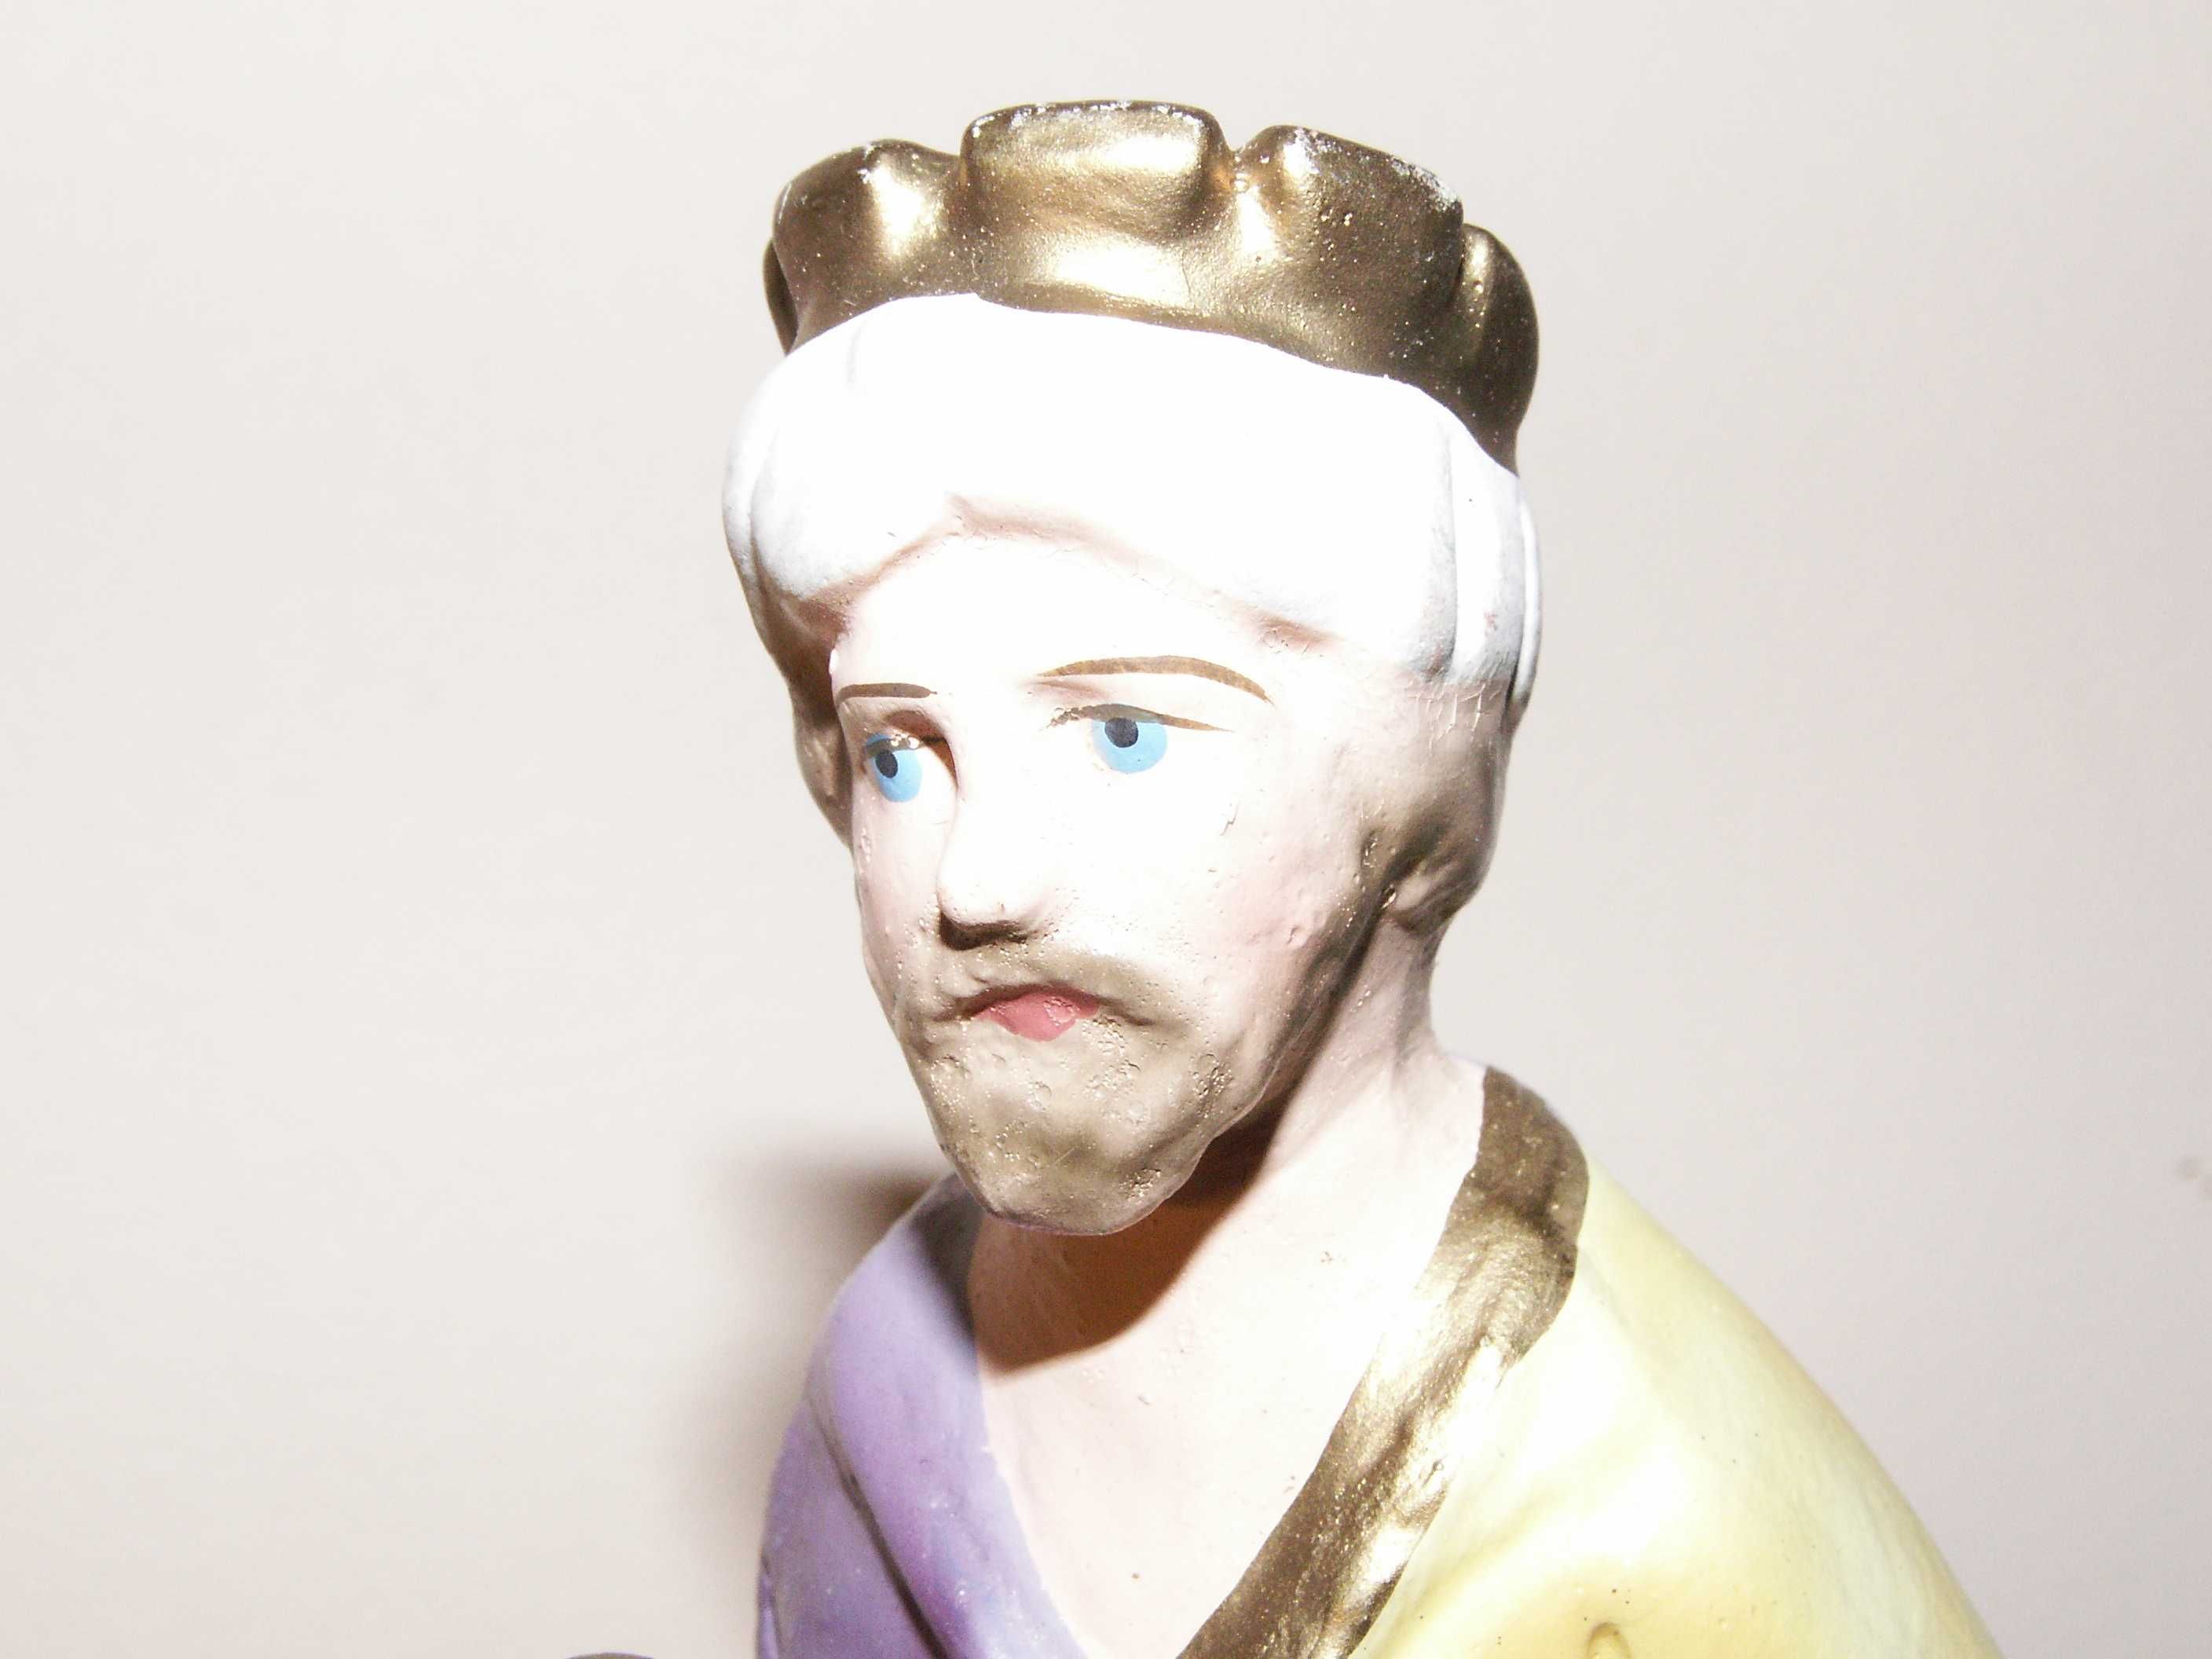 Król 17 cm - Stara gipsowa figurka do szopki